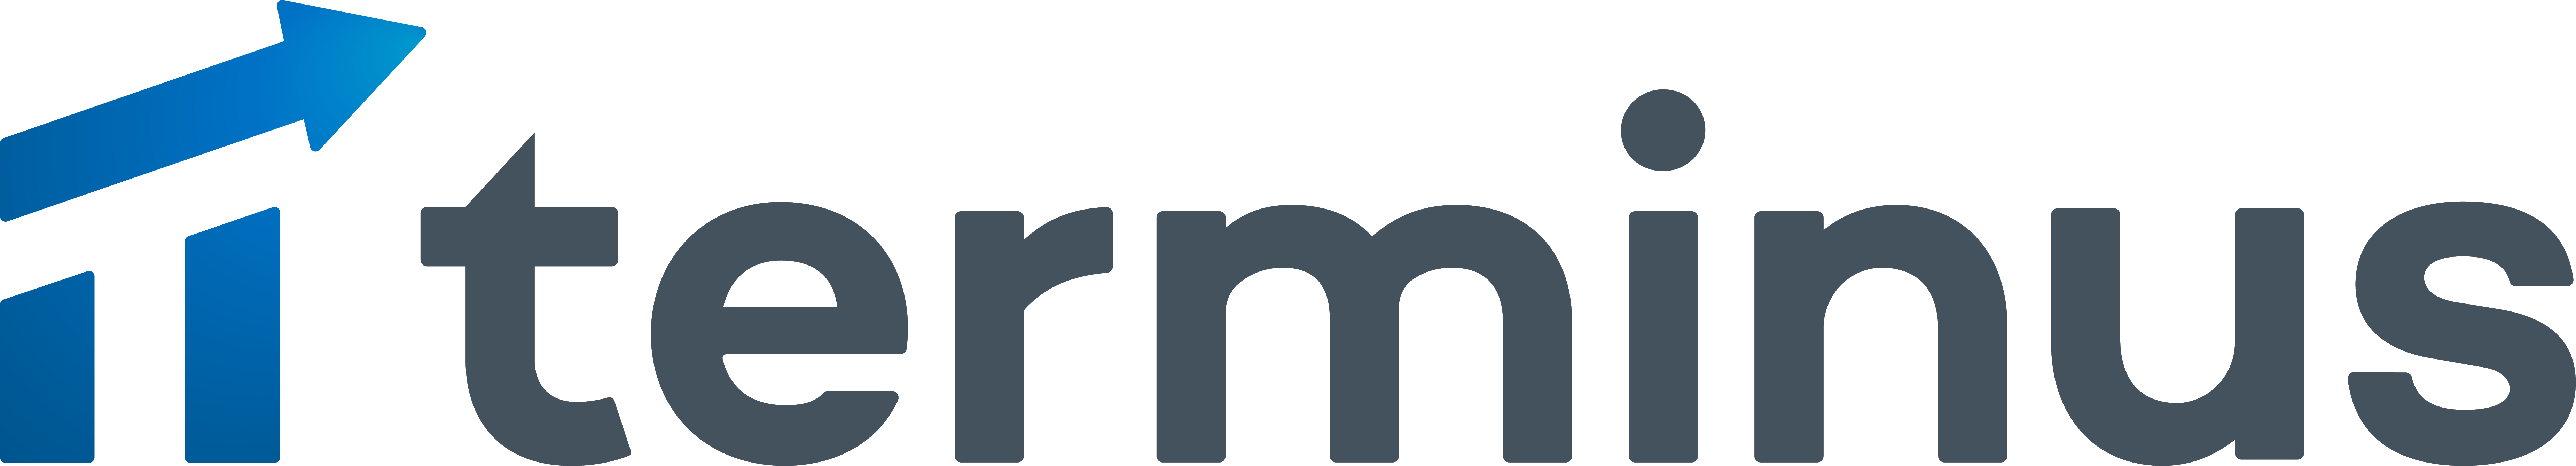 Terminus-Primary-Logo-Transparent.png